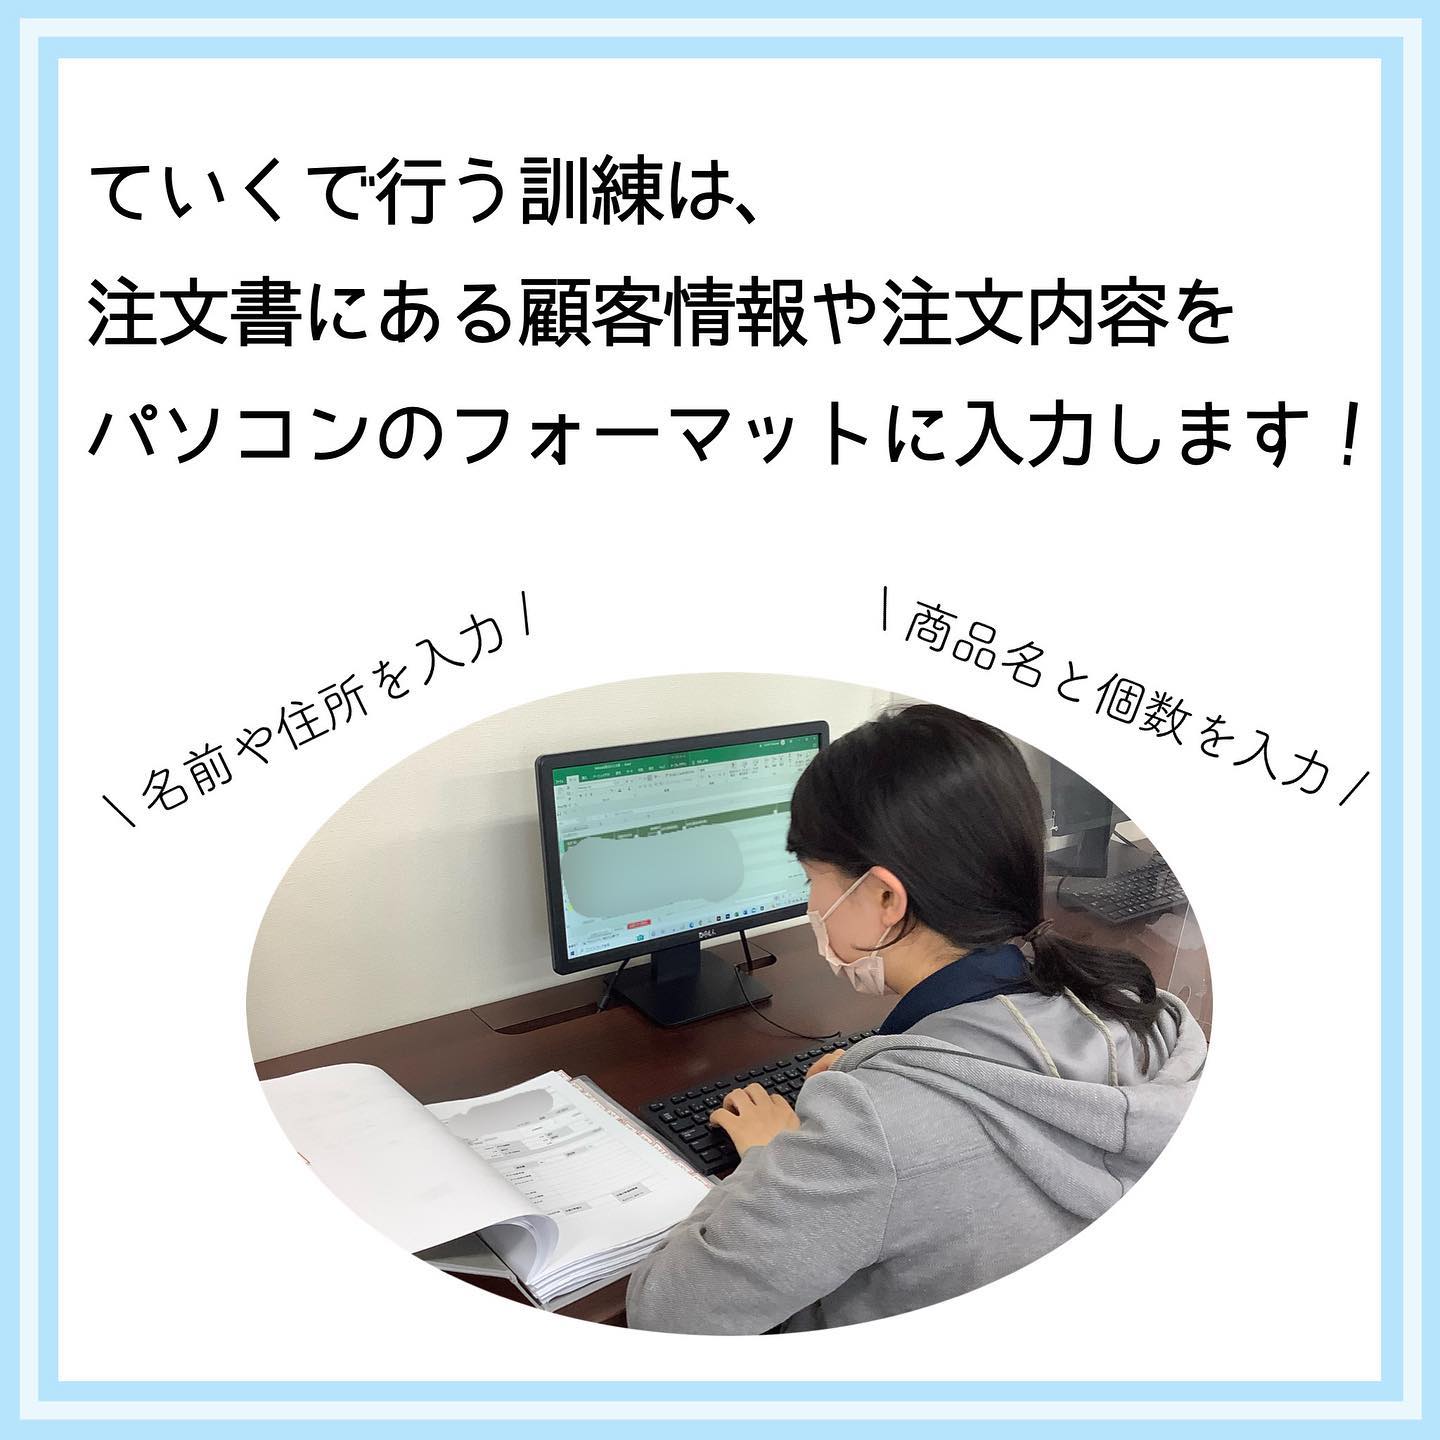 福岡市・博多駅周辺の就労移行支援事業所ていくでできる事務作業訓練「データ入力」